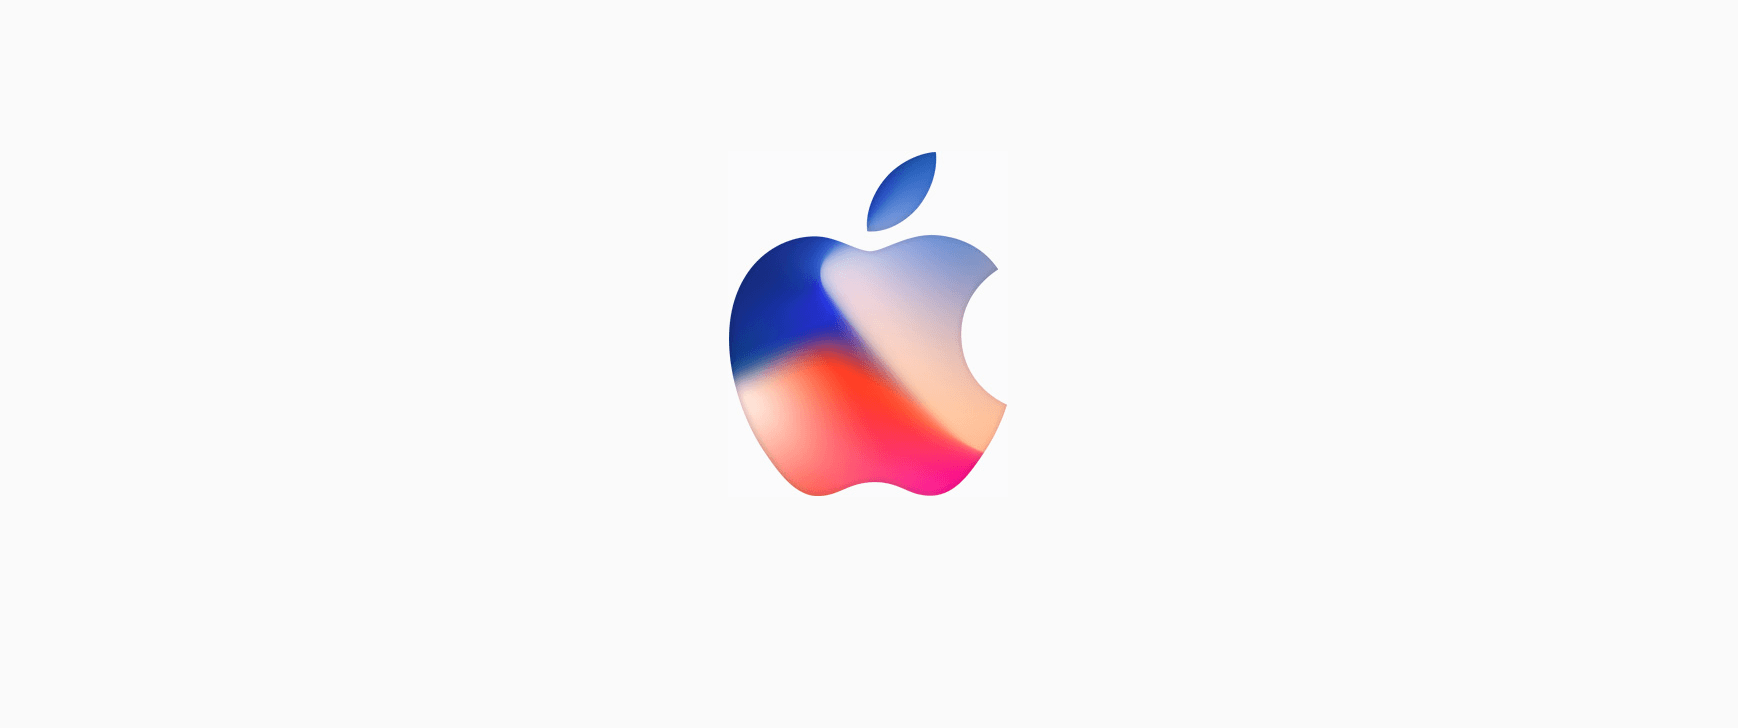 Официально: Презентация Apple состоится 12 сентября